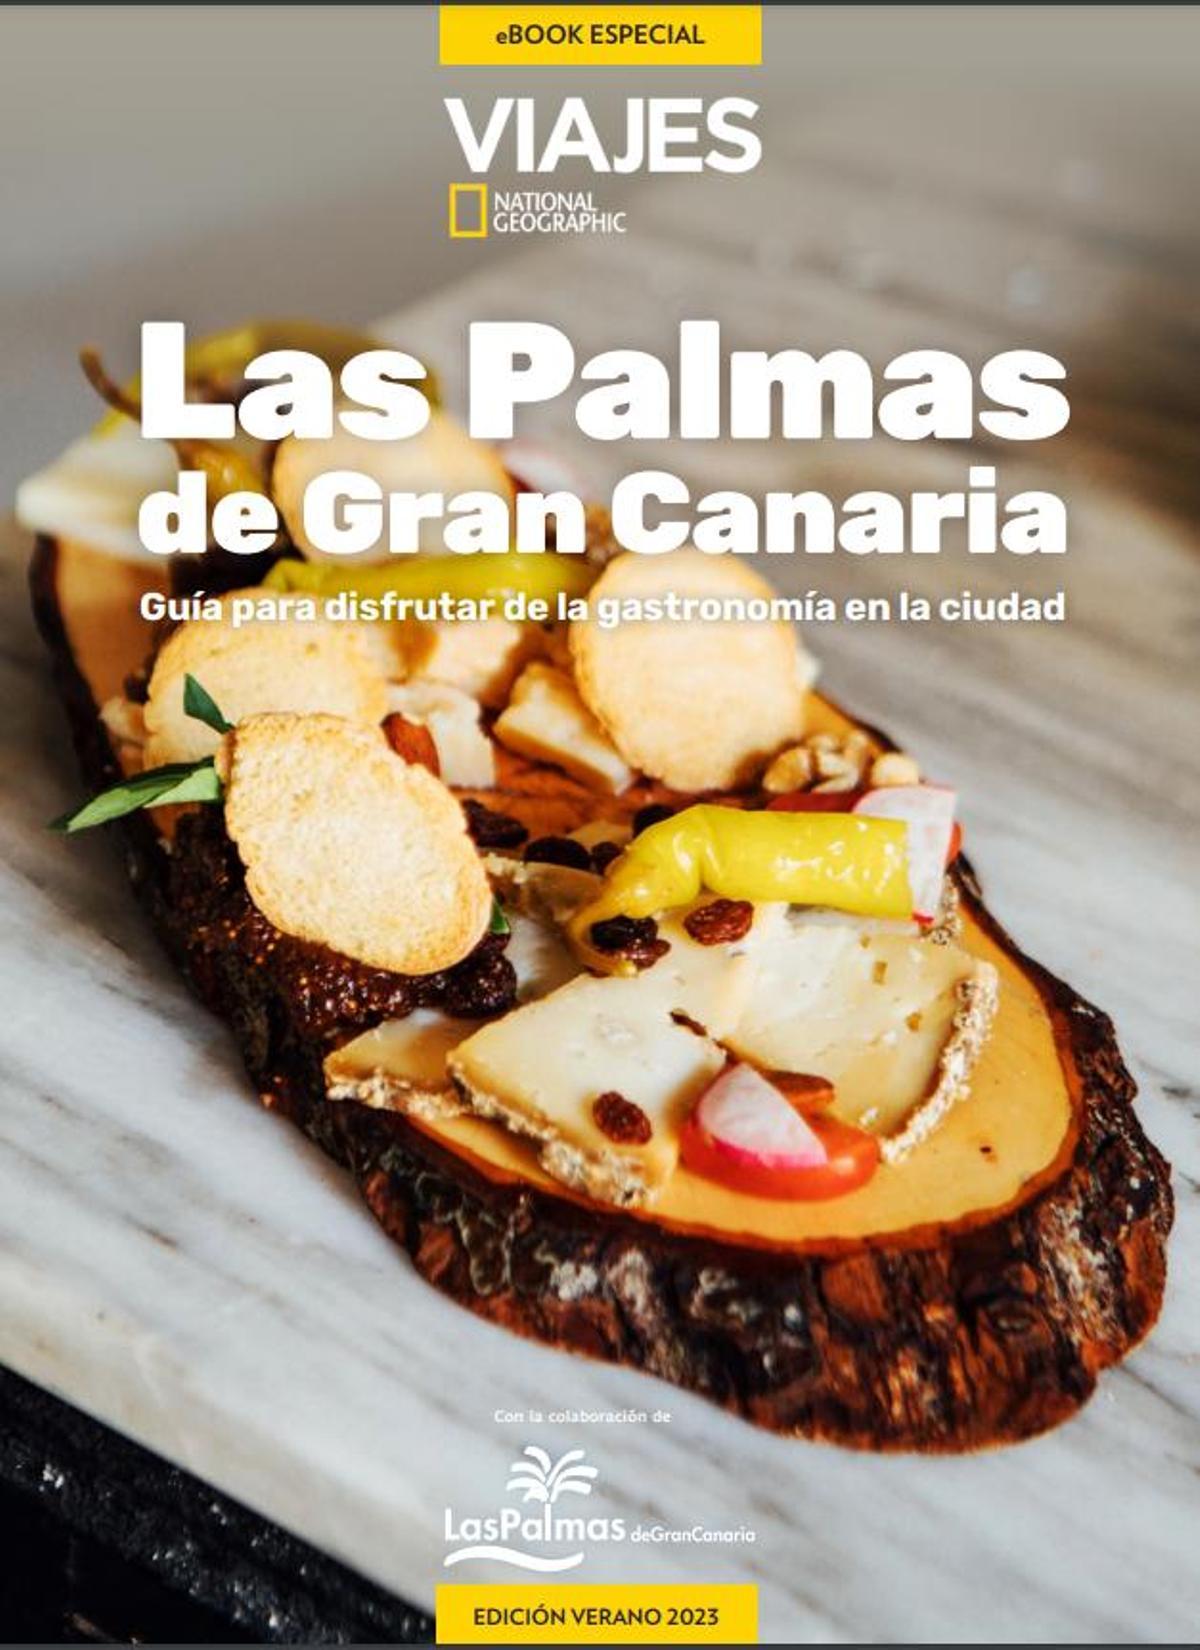 Viajes National Geographic actualiza la Guía Gastronómica que dedica a Las Palmas de Gran Canaria con nuevas propuestas